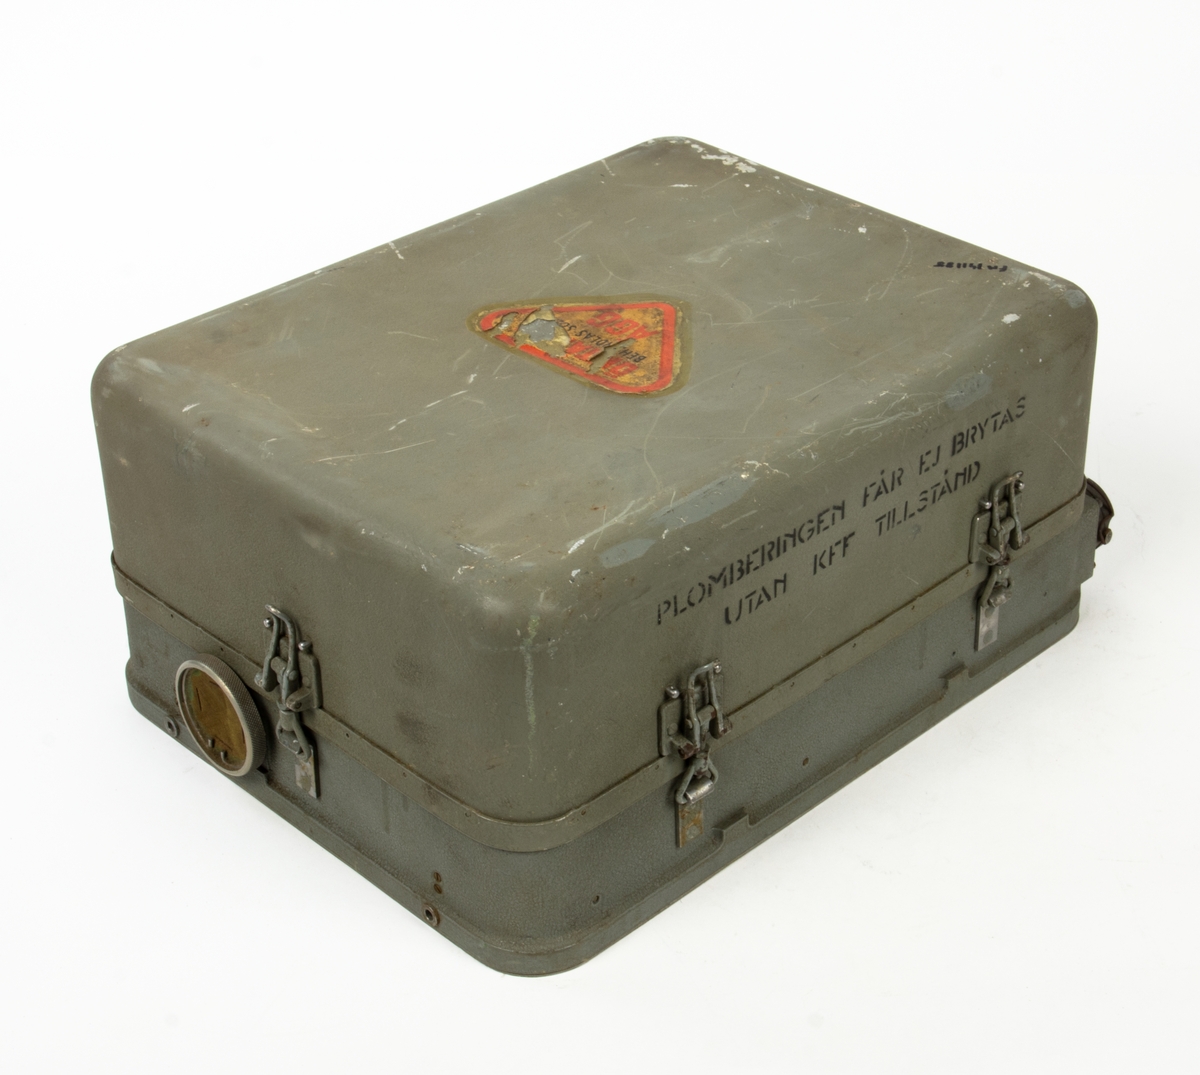 Centralinstrument för bombsikte BT-9.